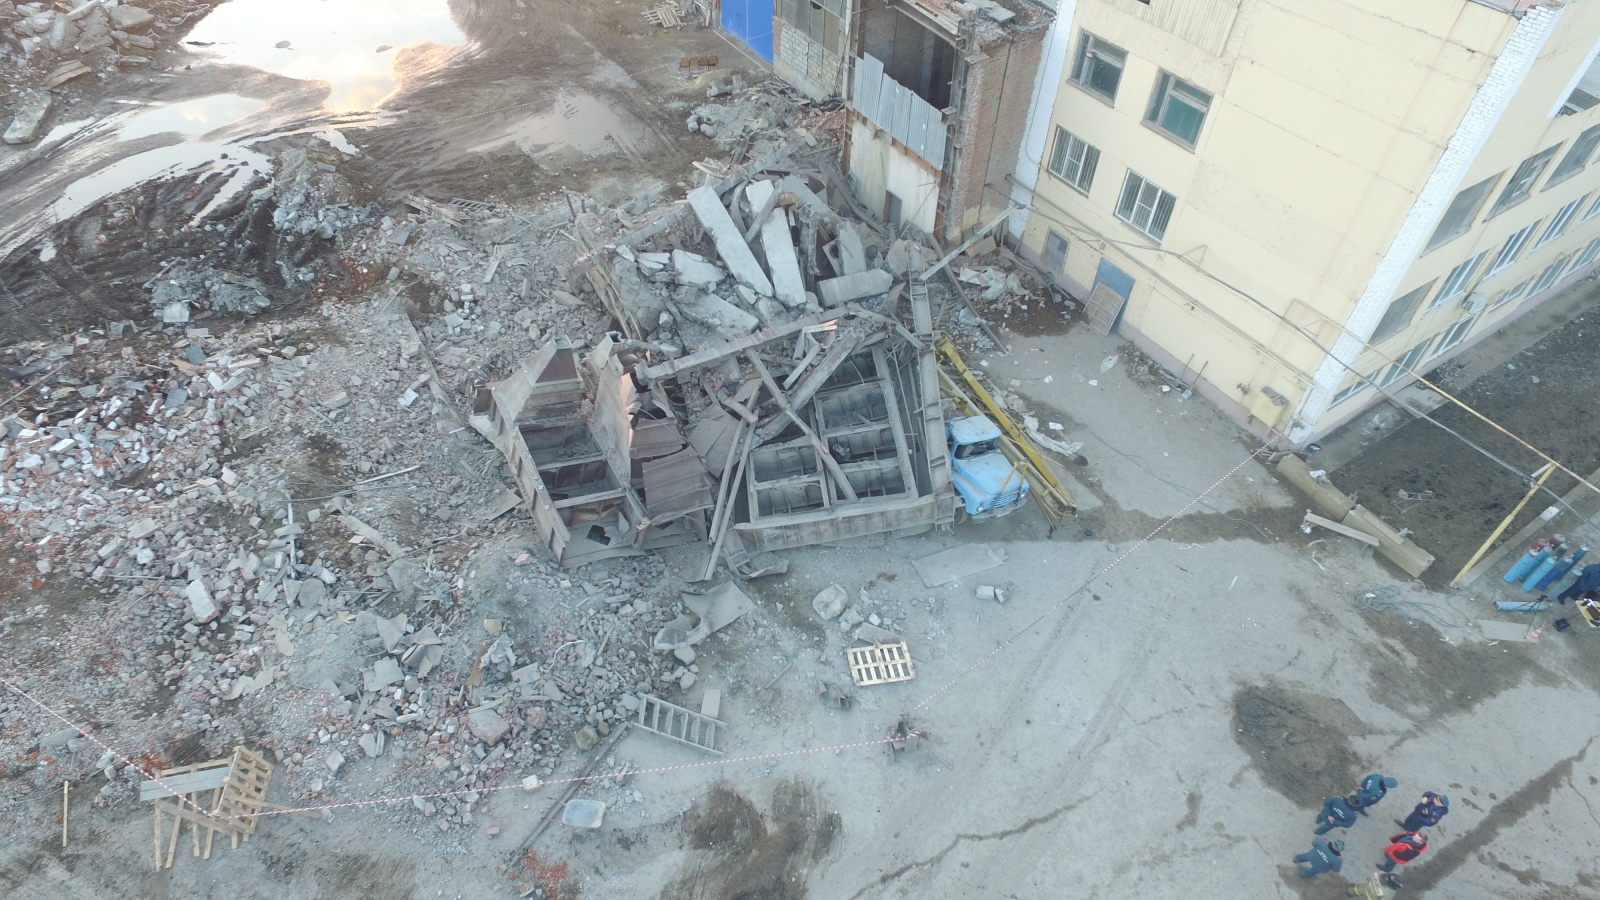 Обрушение здания в Саранске: возбуждено уголовное дело